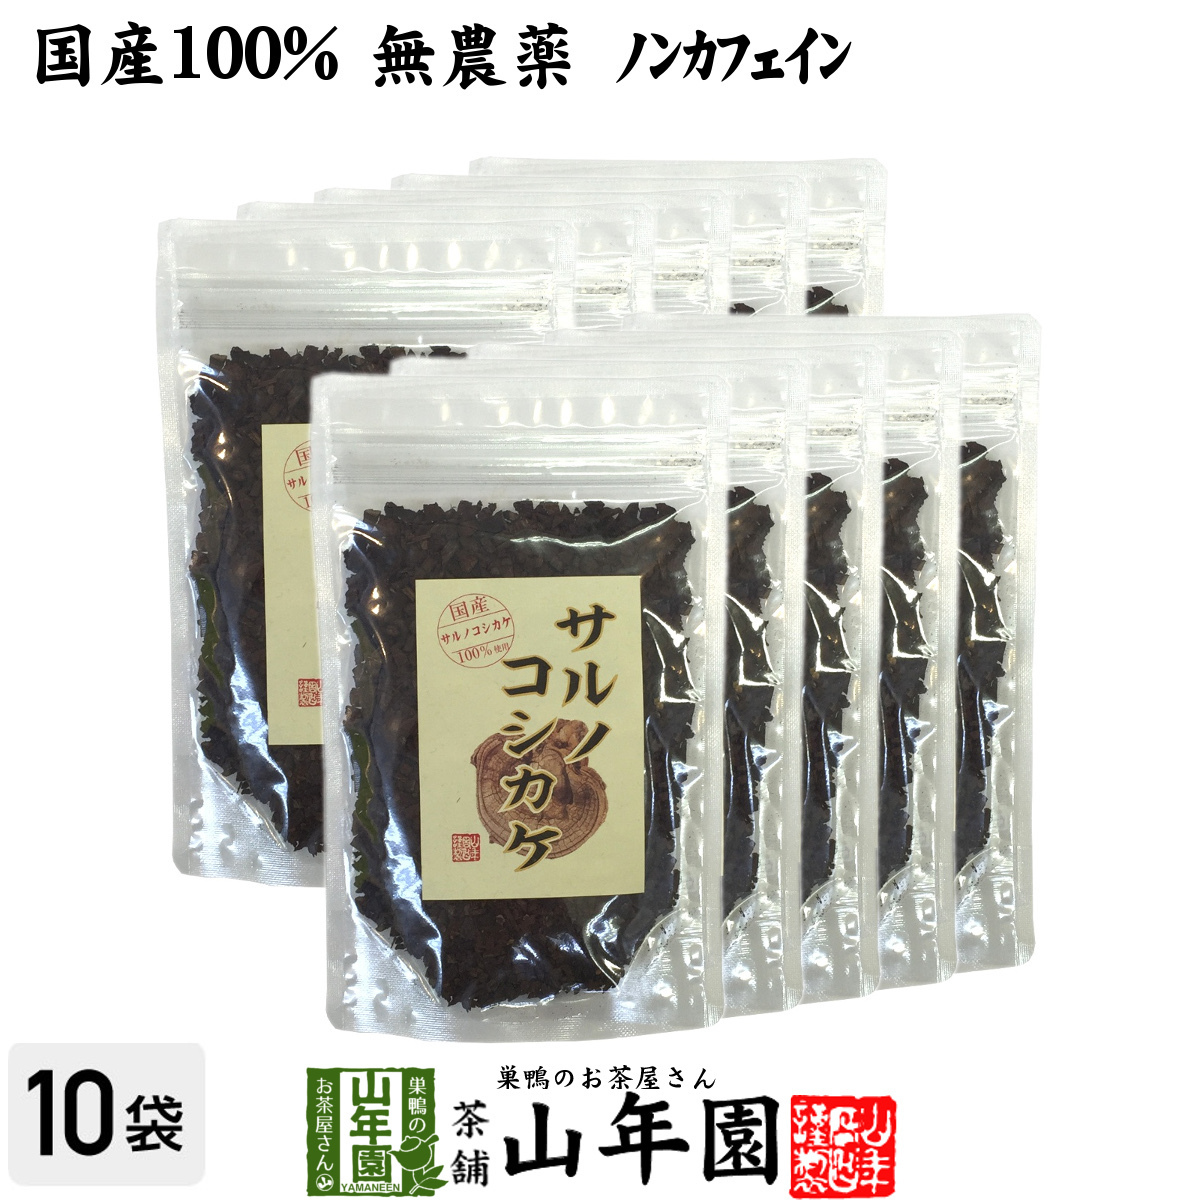 健康茶 国産100% サルノコシカケ茶 70g×10袋セット 宮崎県産 ノンカフェイン 無農薬 送料無料